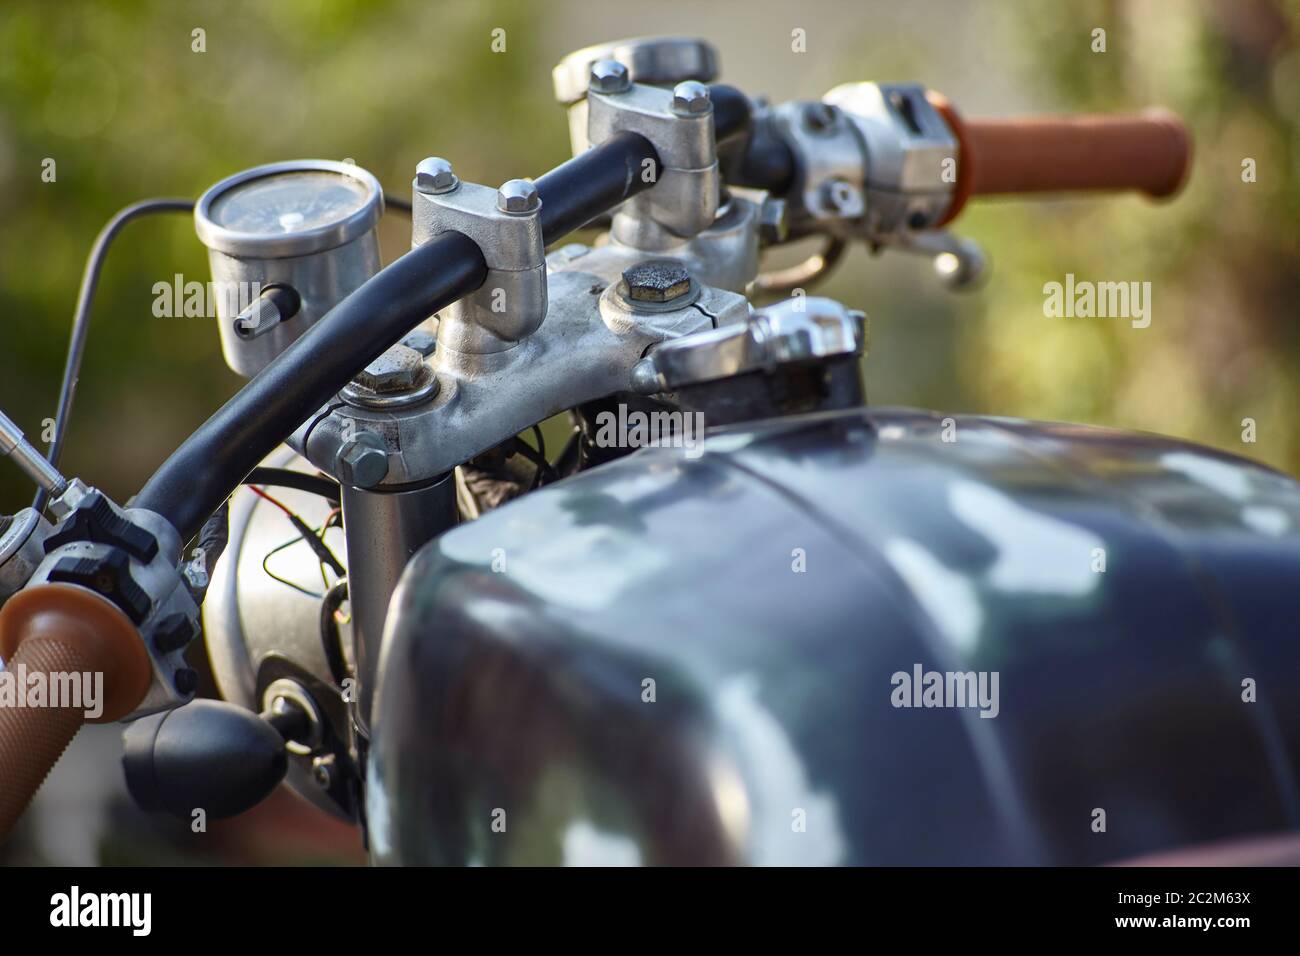 Vue avant du guidon d'une vieille moto de style rat présentant des signes de corrosion et d'usure qui ont mûri avec le temps. Banque D'Images